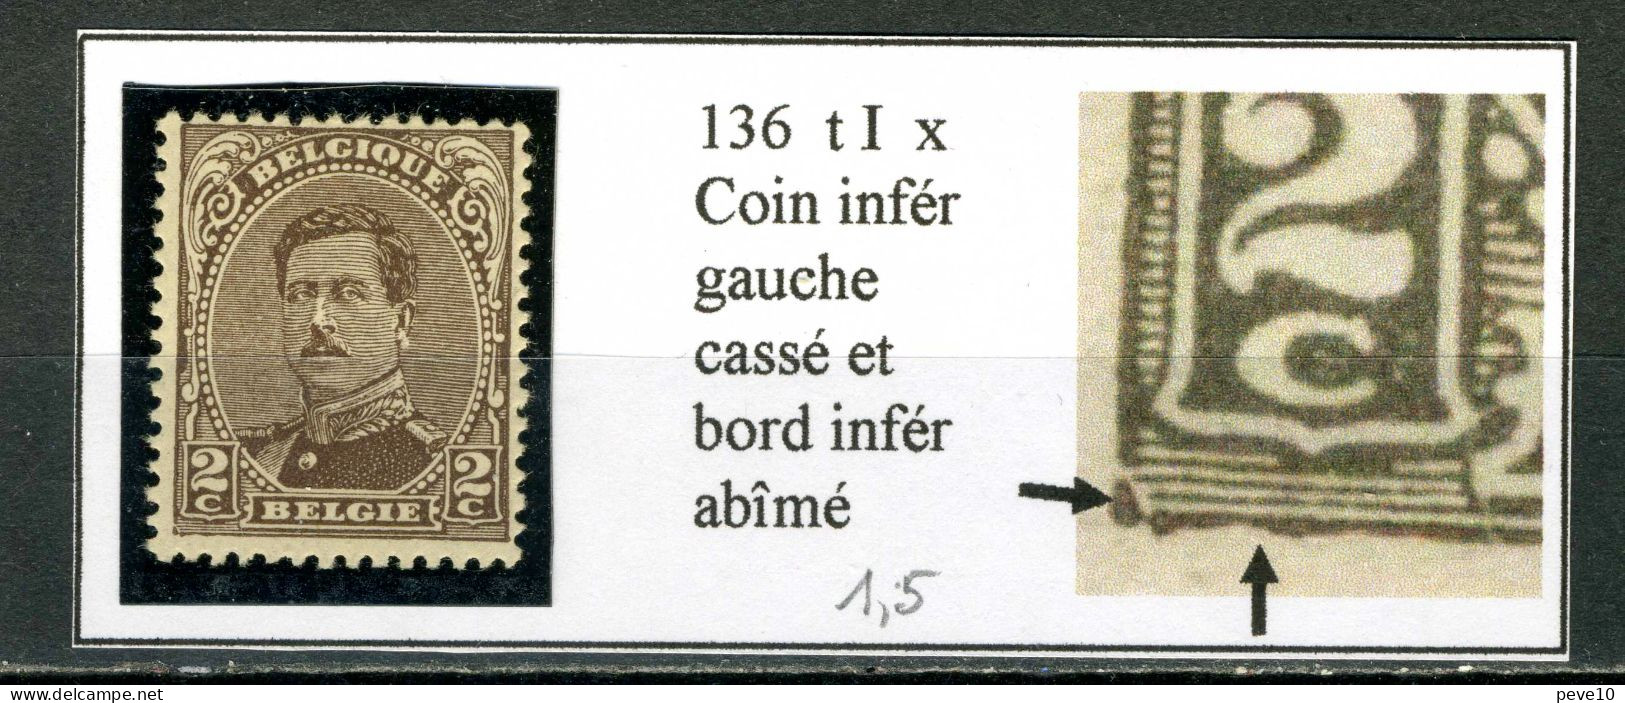 Belgique  N° 136   Type I   Coin Inférieur Cassé Et Bord Inférieur Abîmé - Unclassified